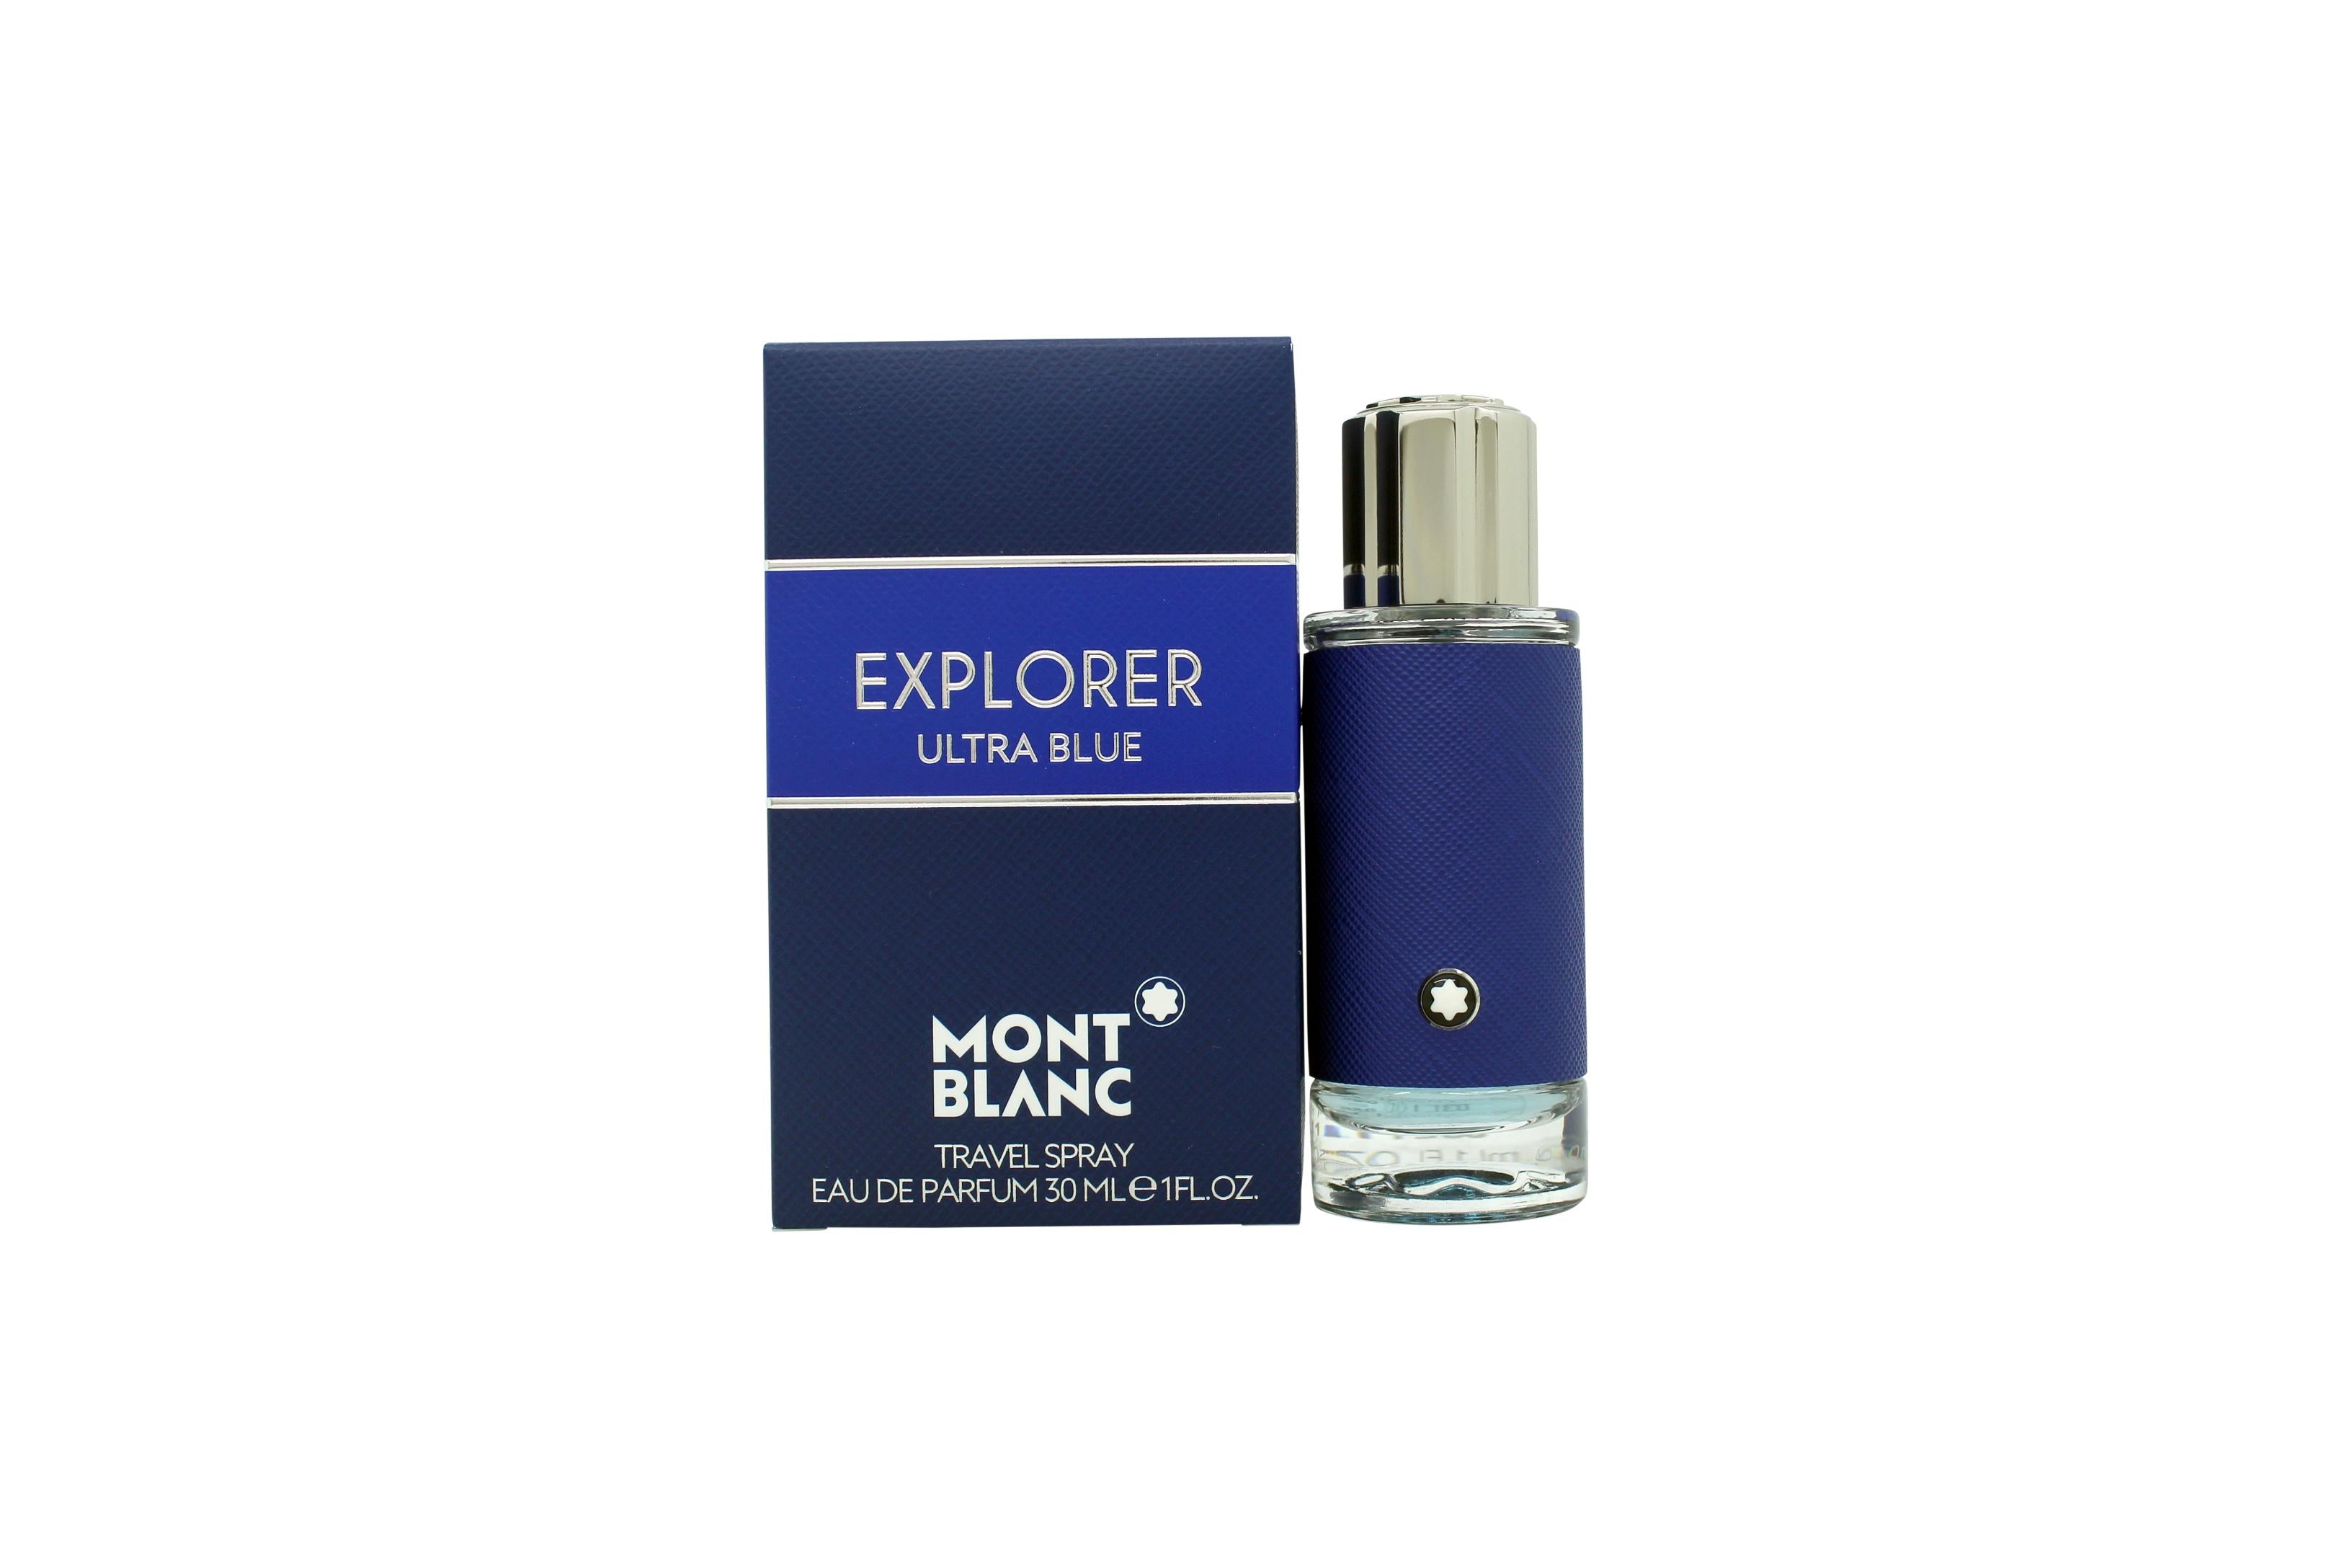 View Mont Blanc Explorer Ultra Blue Eau de Parfum 30ml Spray information